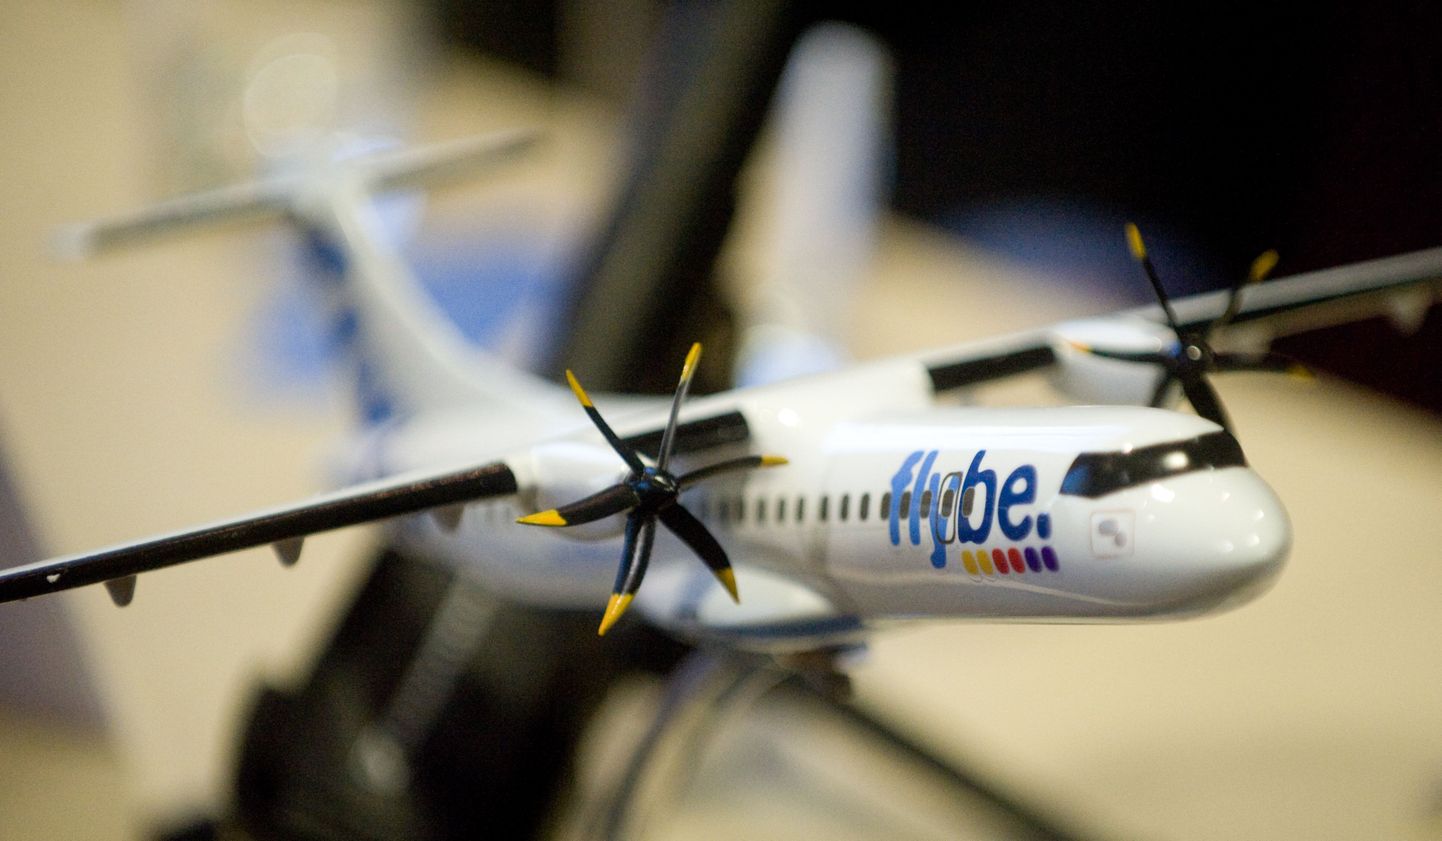 Lennukompanii Flybe avab Tallinnast ja Tartust kuus lennuliini Soome ja Rootsi.